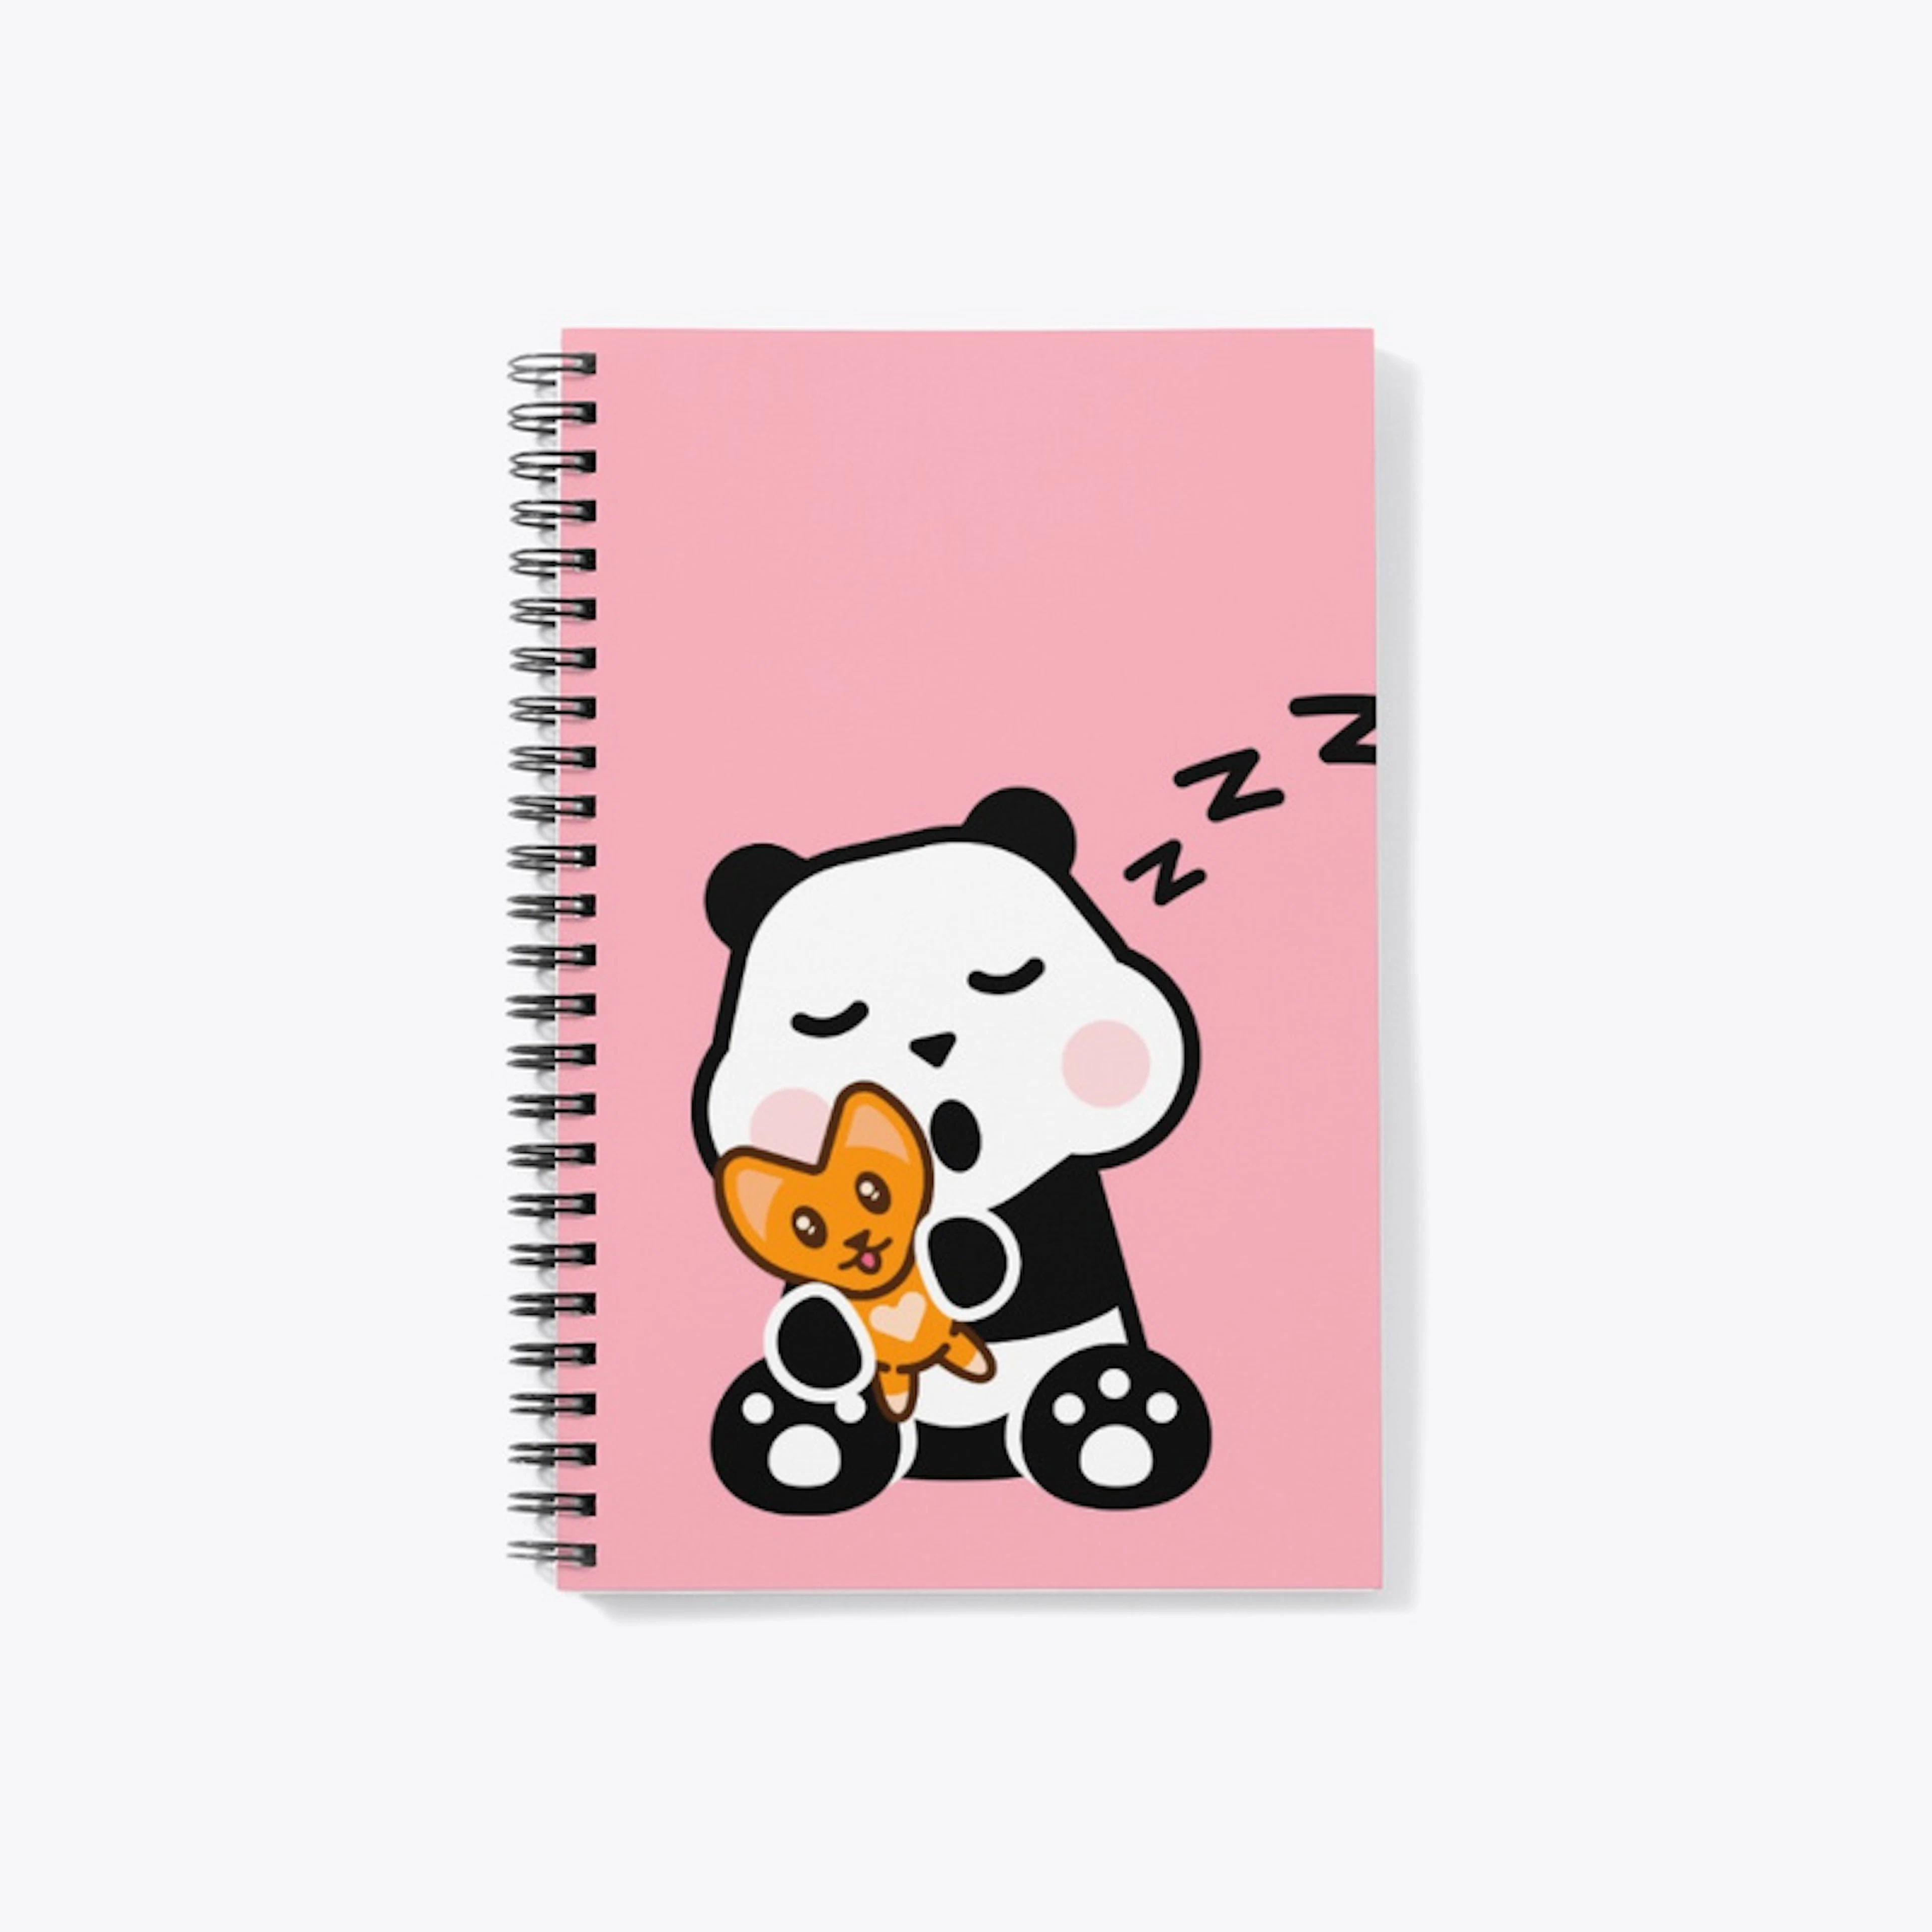 Sleepy Kawaii notebook